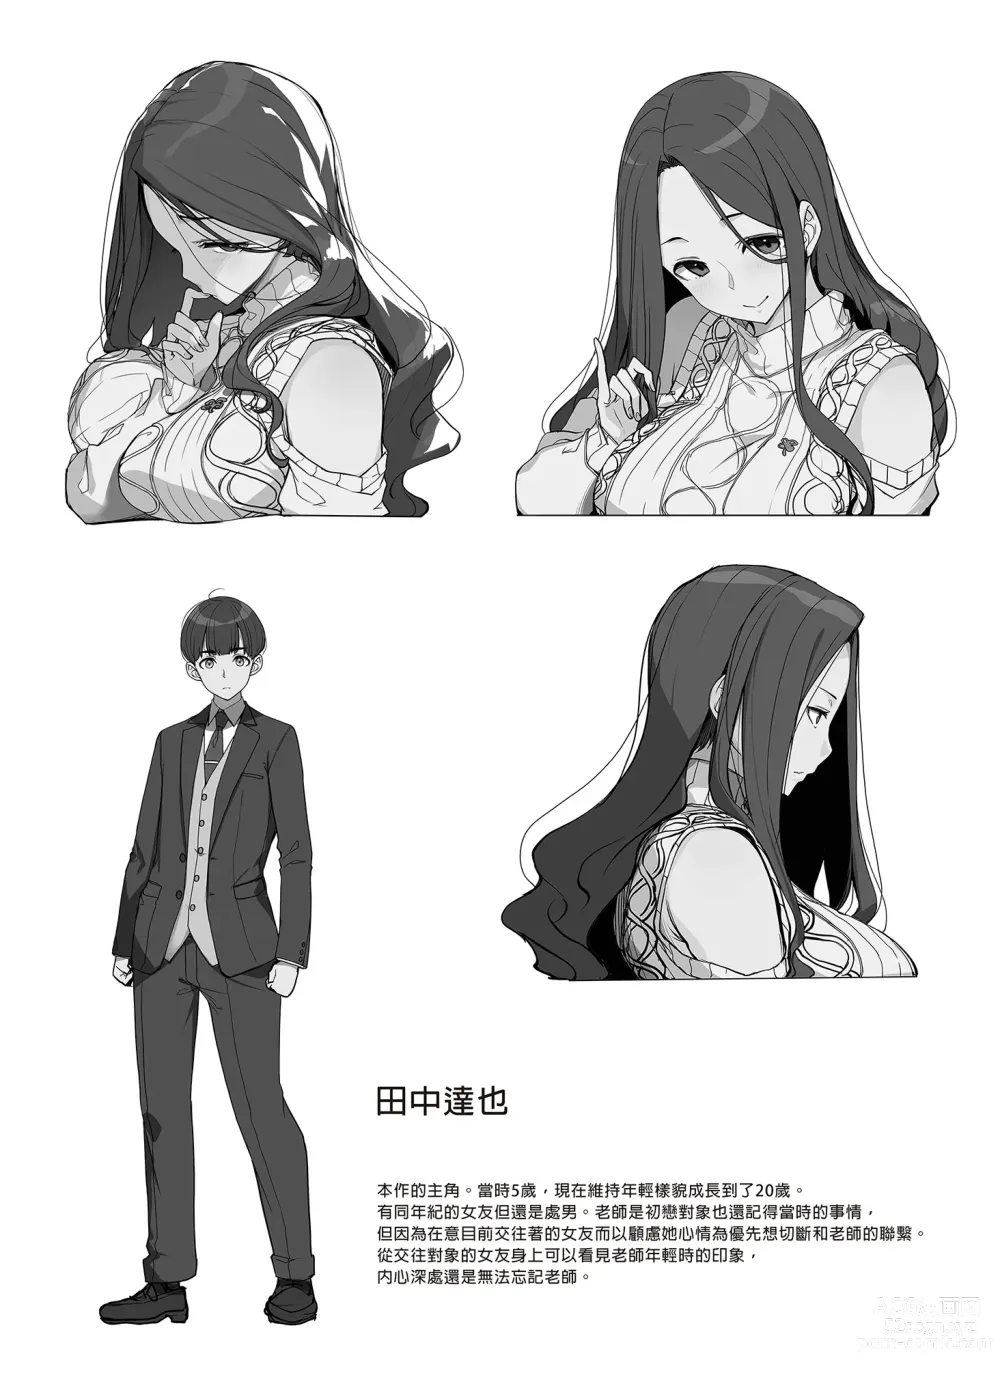 Page 25 of doujinshi 和痴情的姐姐重逢後竟被求婚且每日性福連連 (uncensored)